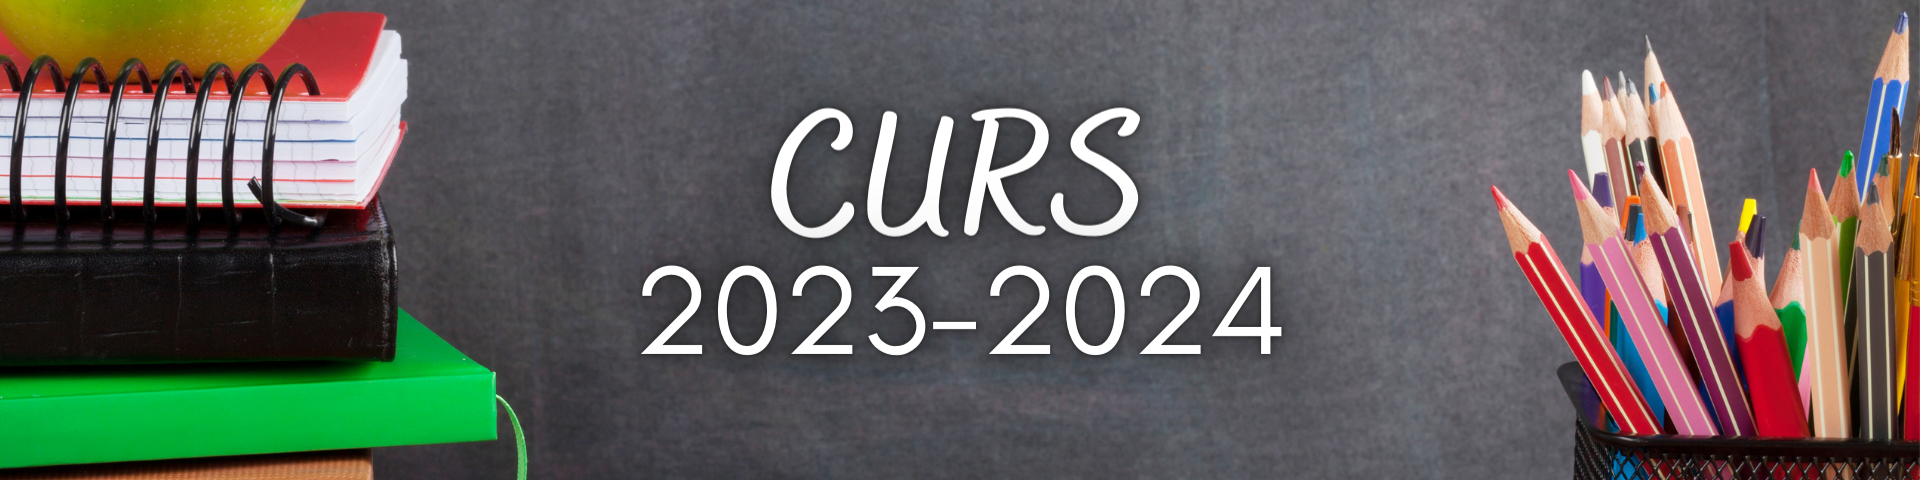 CURS 2023-2024